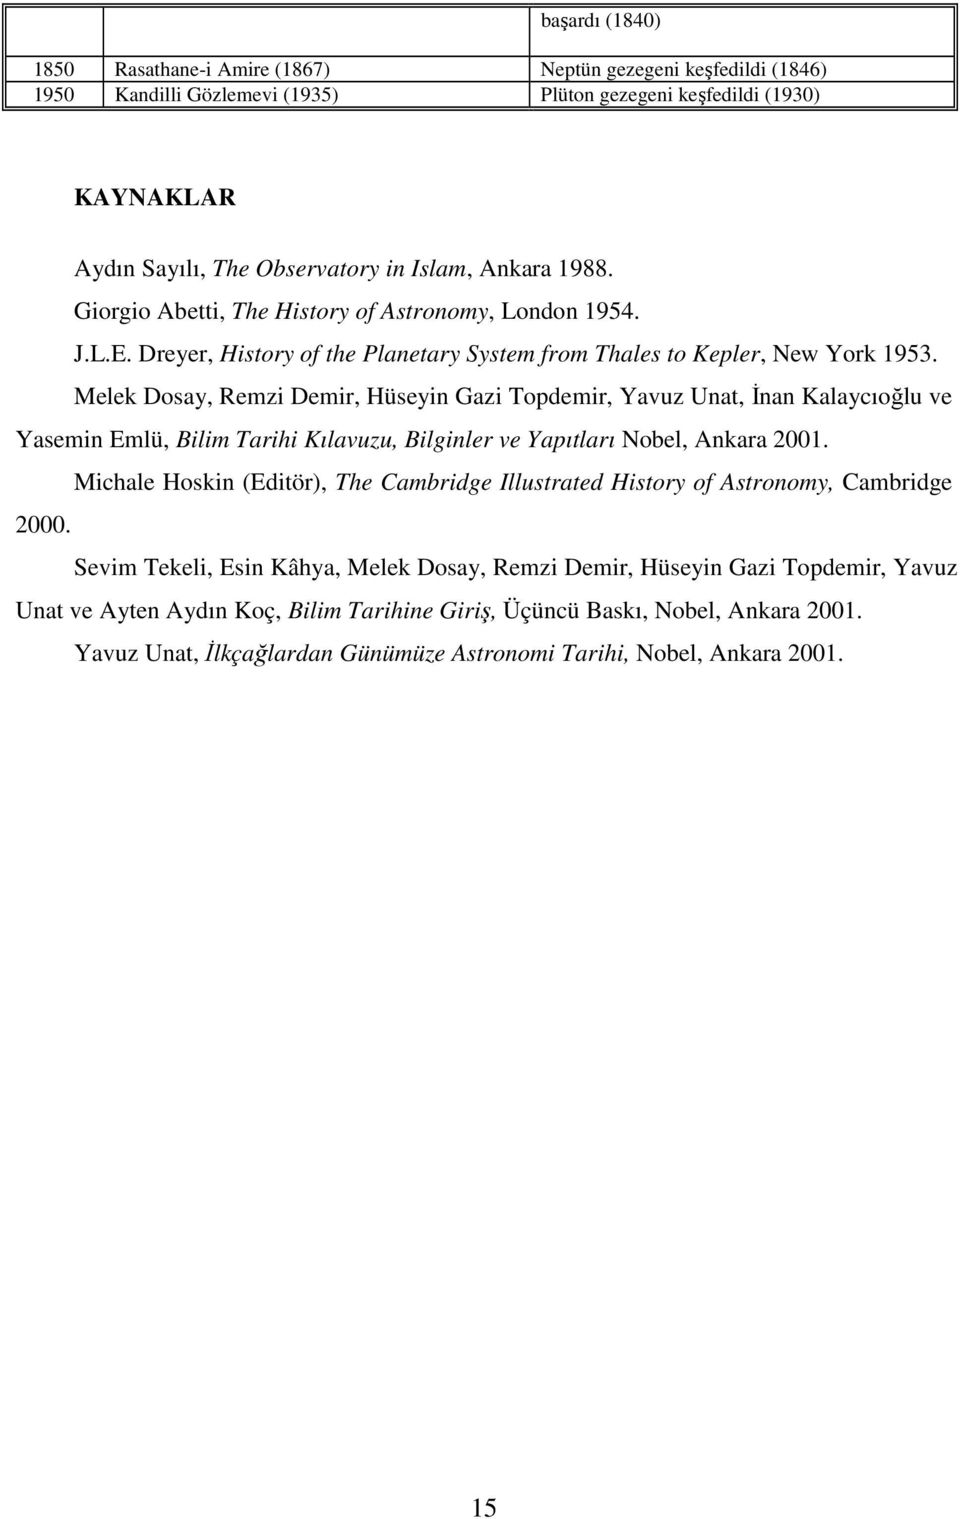 Melek Dosay, Remzi Demir, Hüseyin Gazi Topdemir, Yavuz Unat, Đnan Kalaycıoğlu ve Yasemin Emlü, Bilim Tarihi Kılavuzu, Bilginler ve Yapıtları Nobel, Ankara 2001.